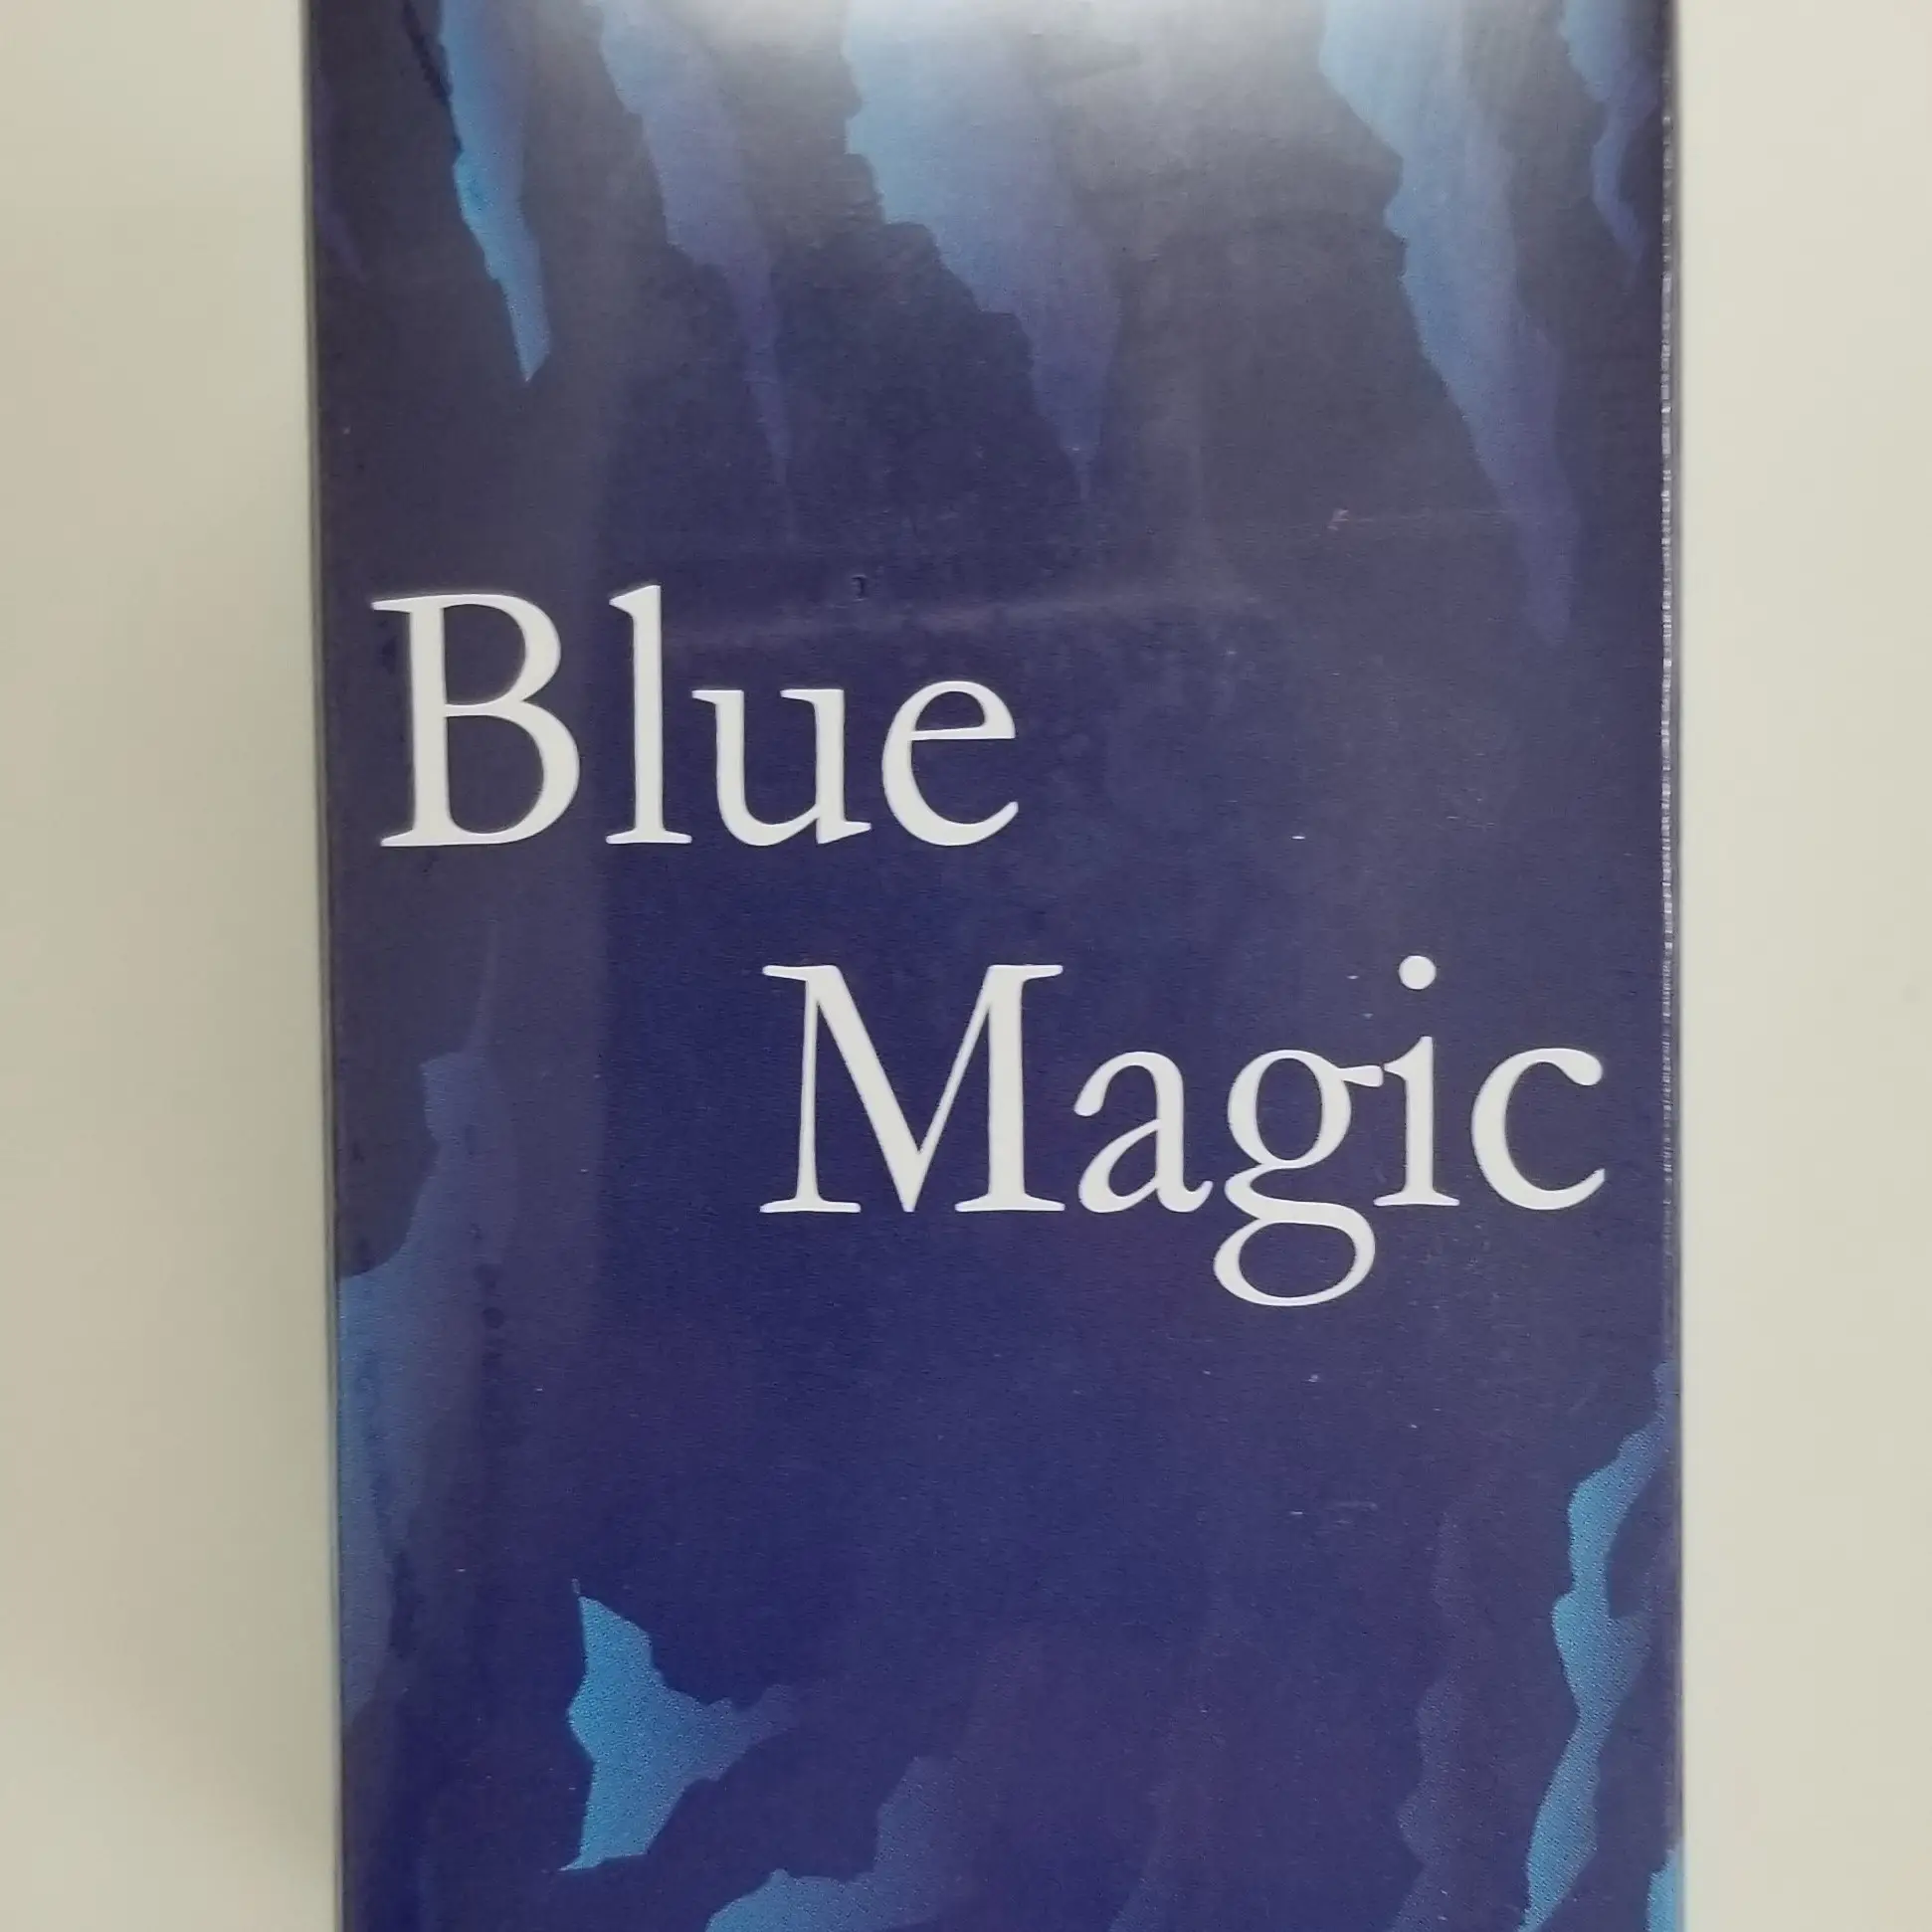 Adrenaline Dieet Blue Magic Afslanken Magnesium Supplementen Gemaakt In Japan